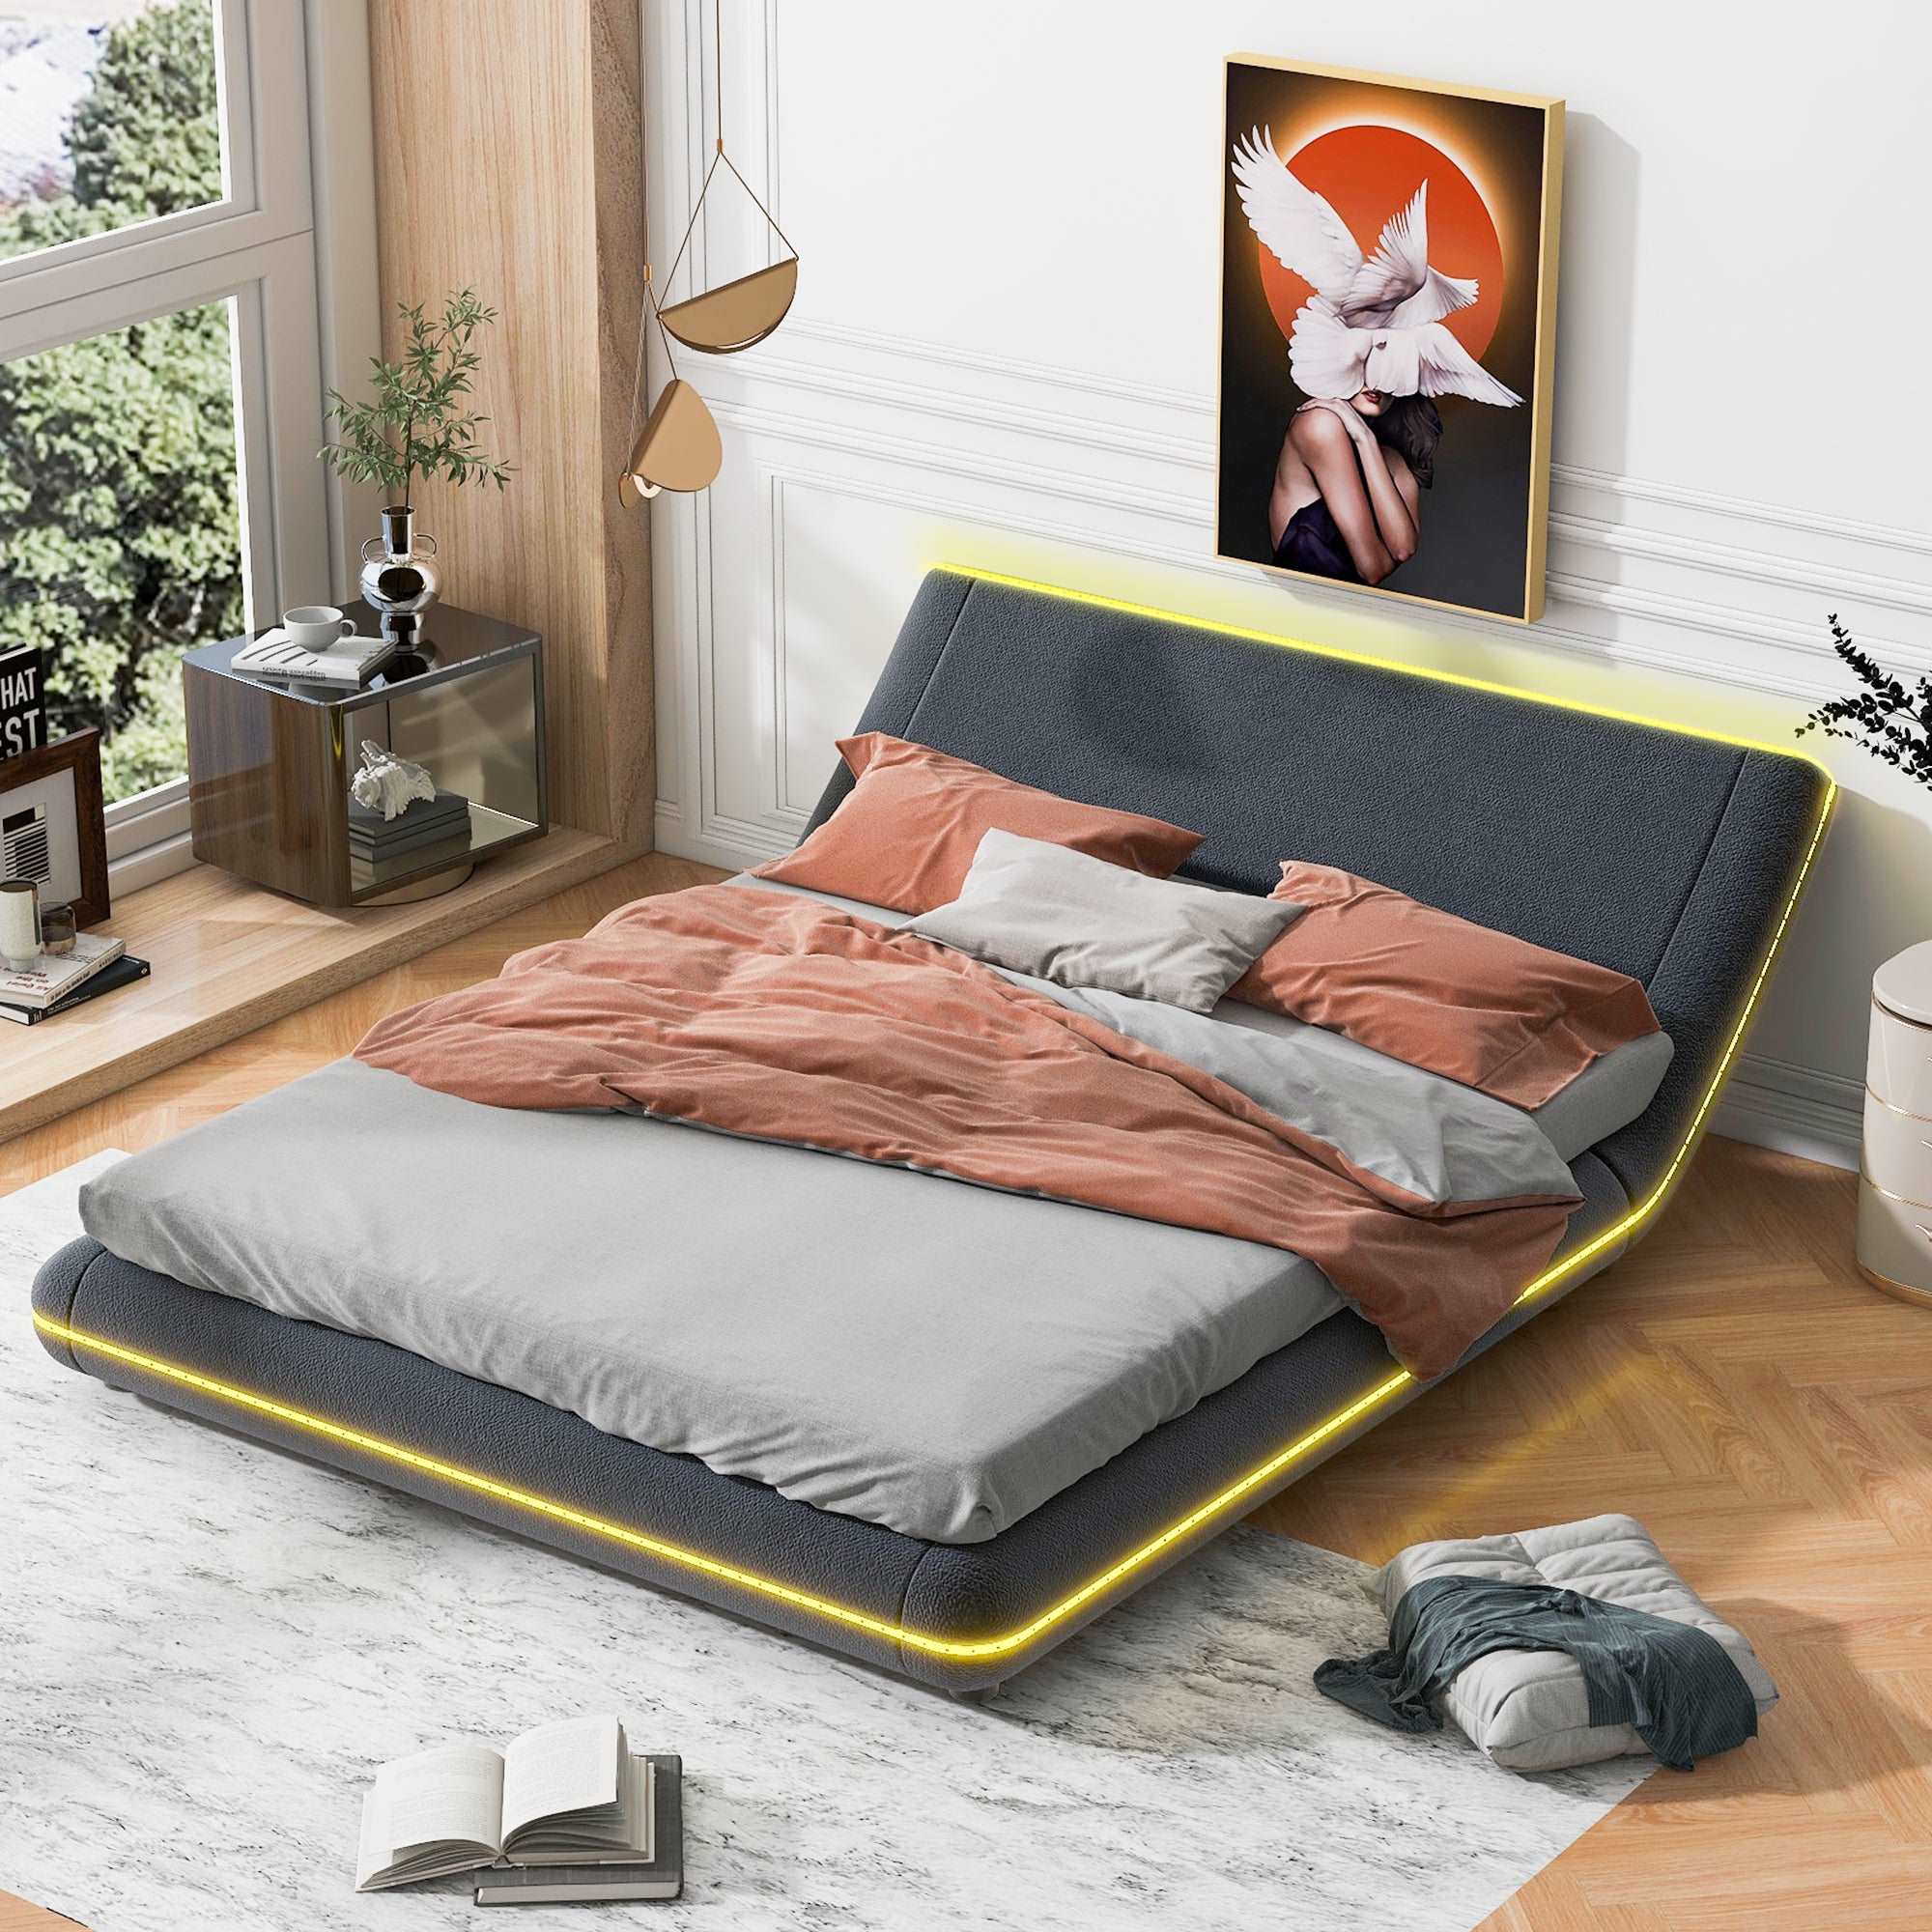 Bellemave Upholstery Platform Bed Frame with Sloped Headboard